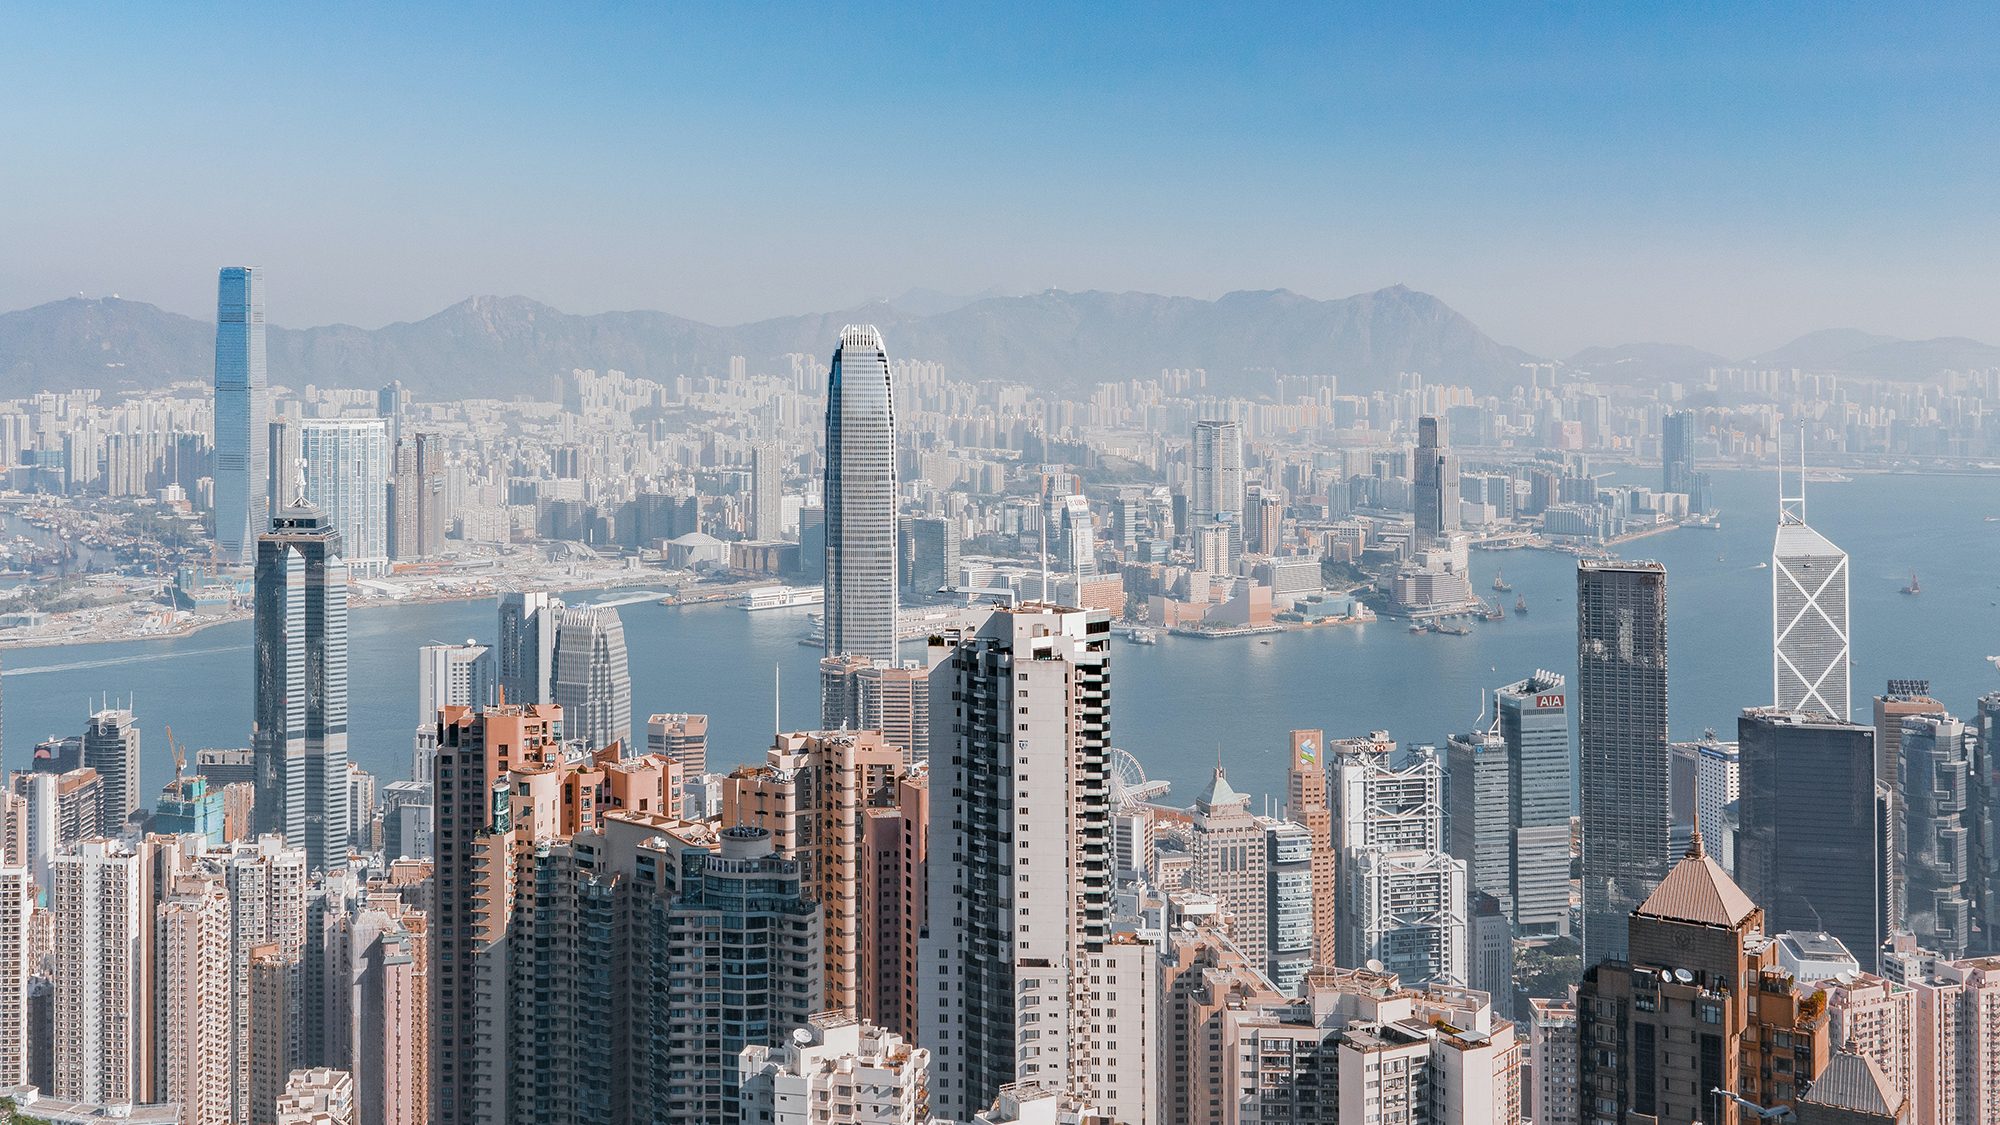 Photograph of Hong Kong cityscape by Ruslan Bardash